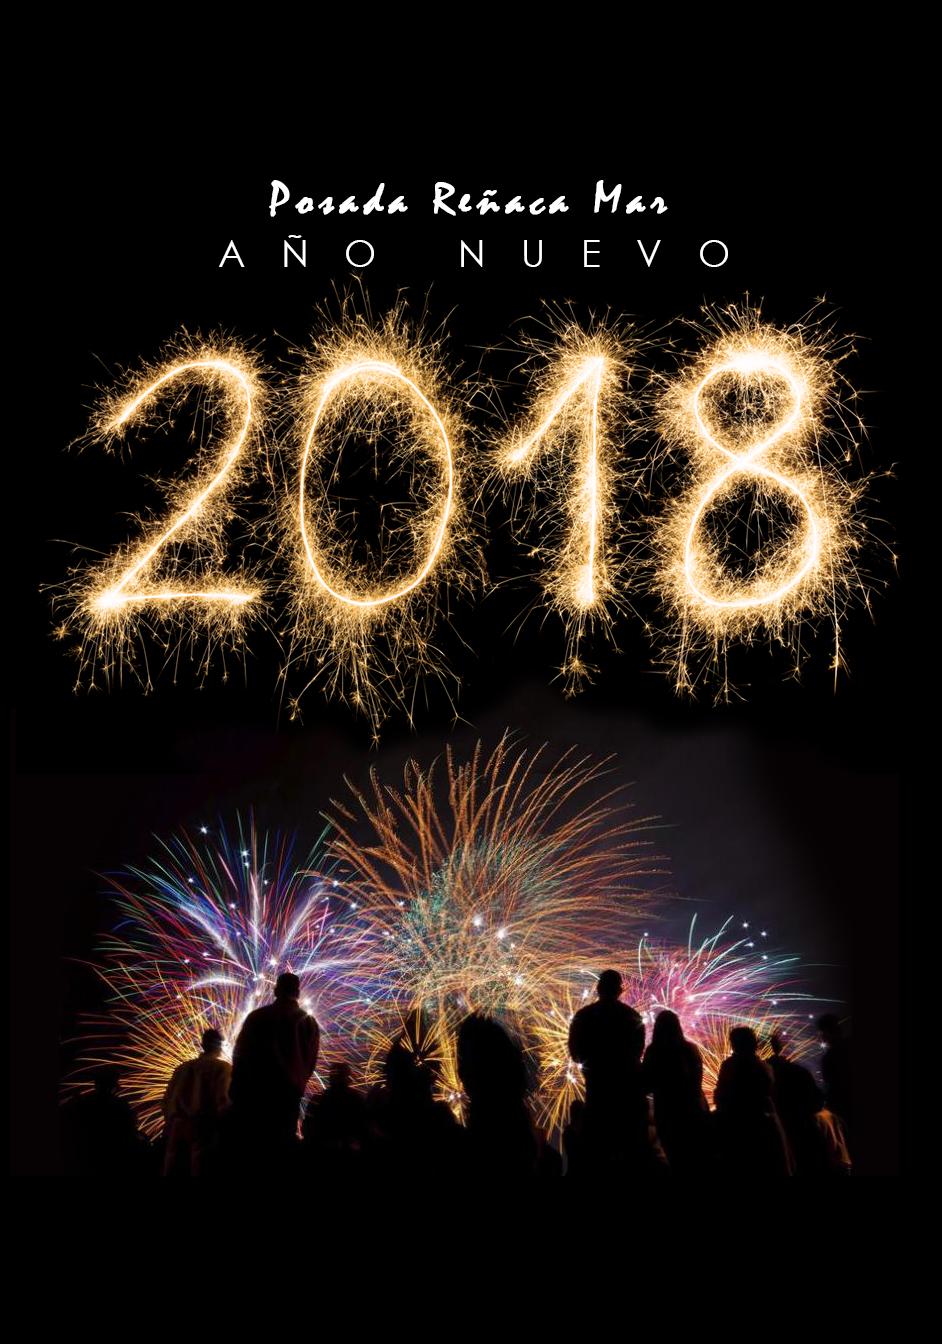 Evento Cena Año Nuevo 2018 en Posada ReñacaMar